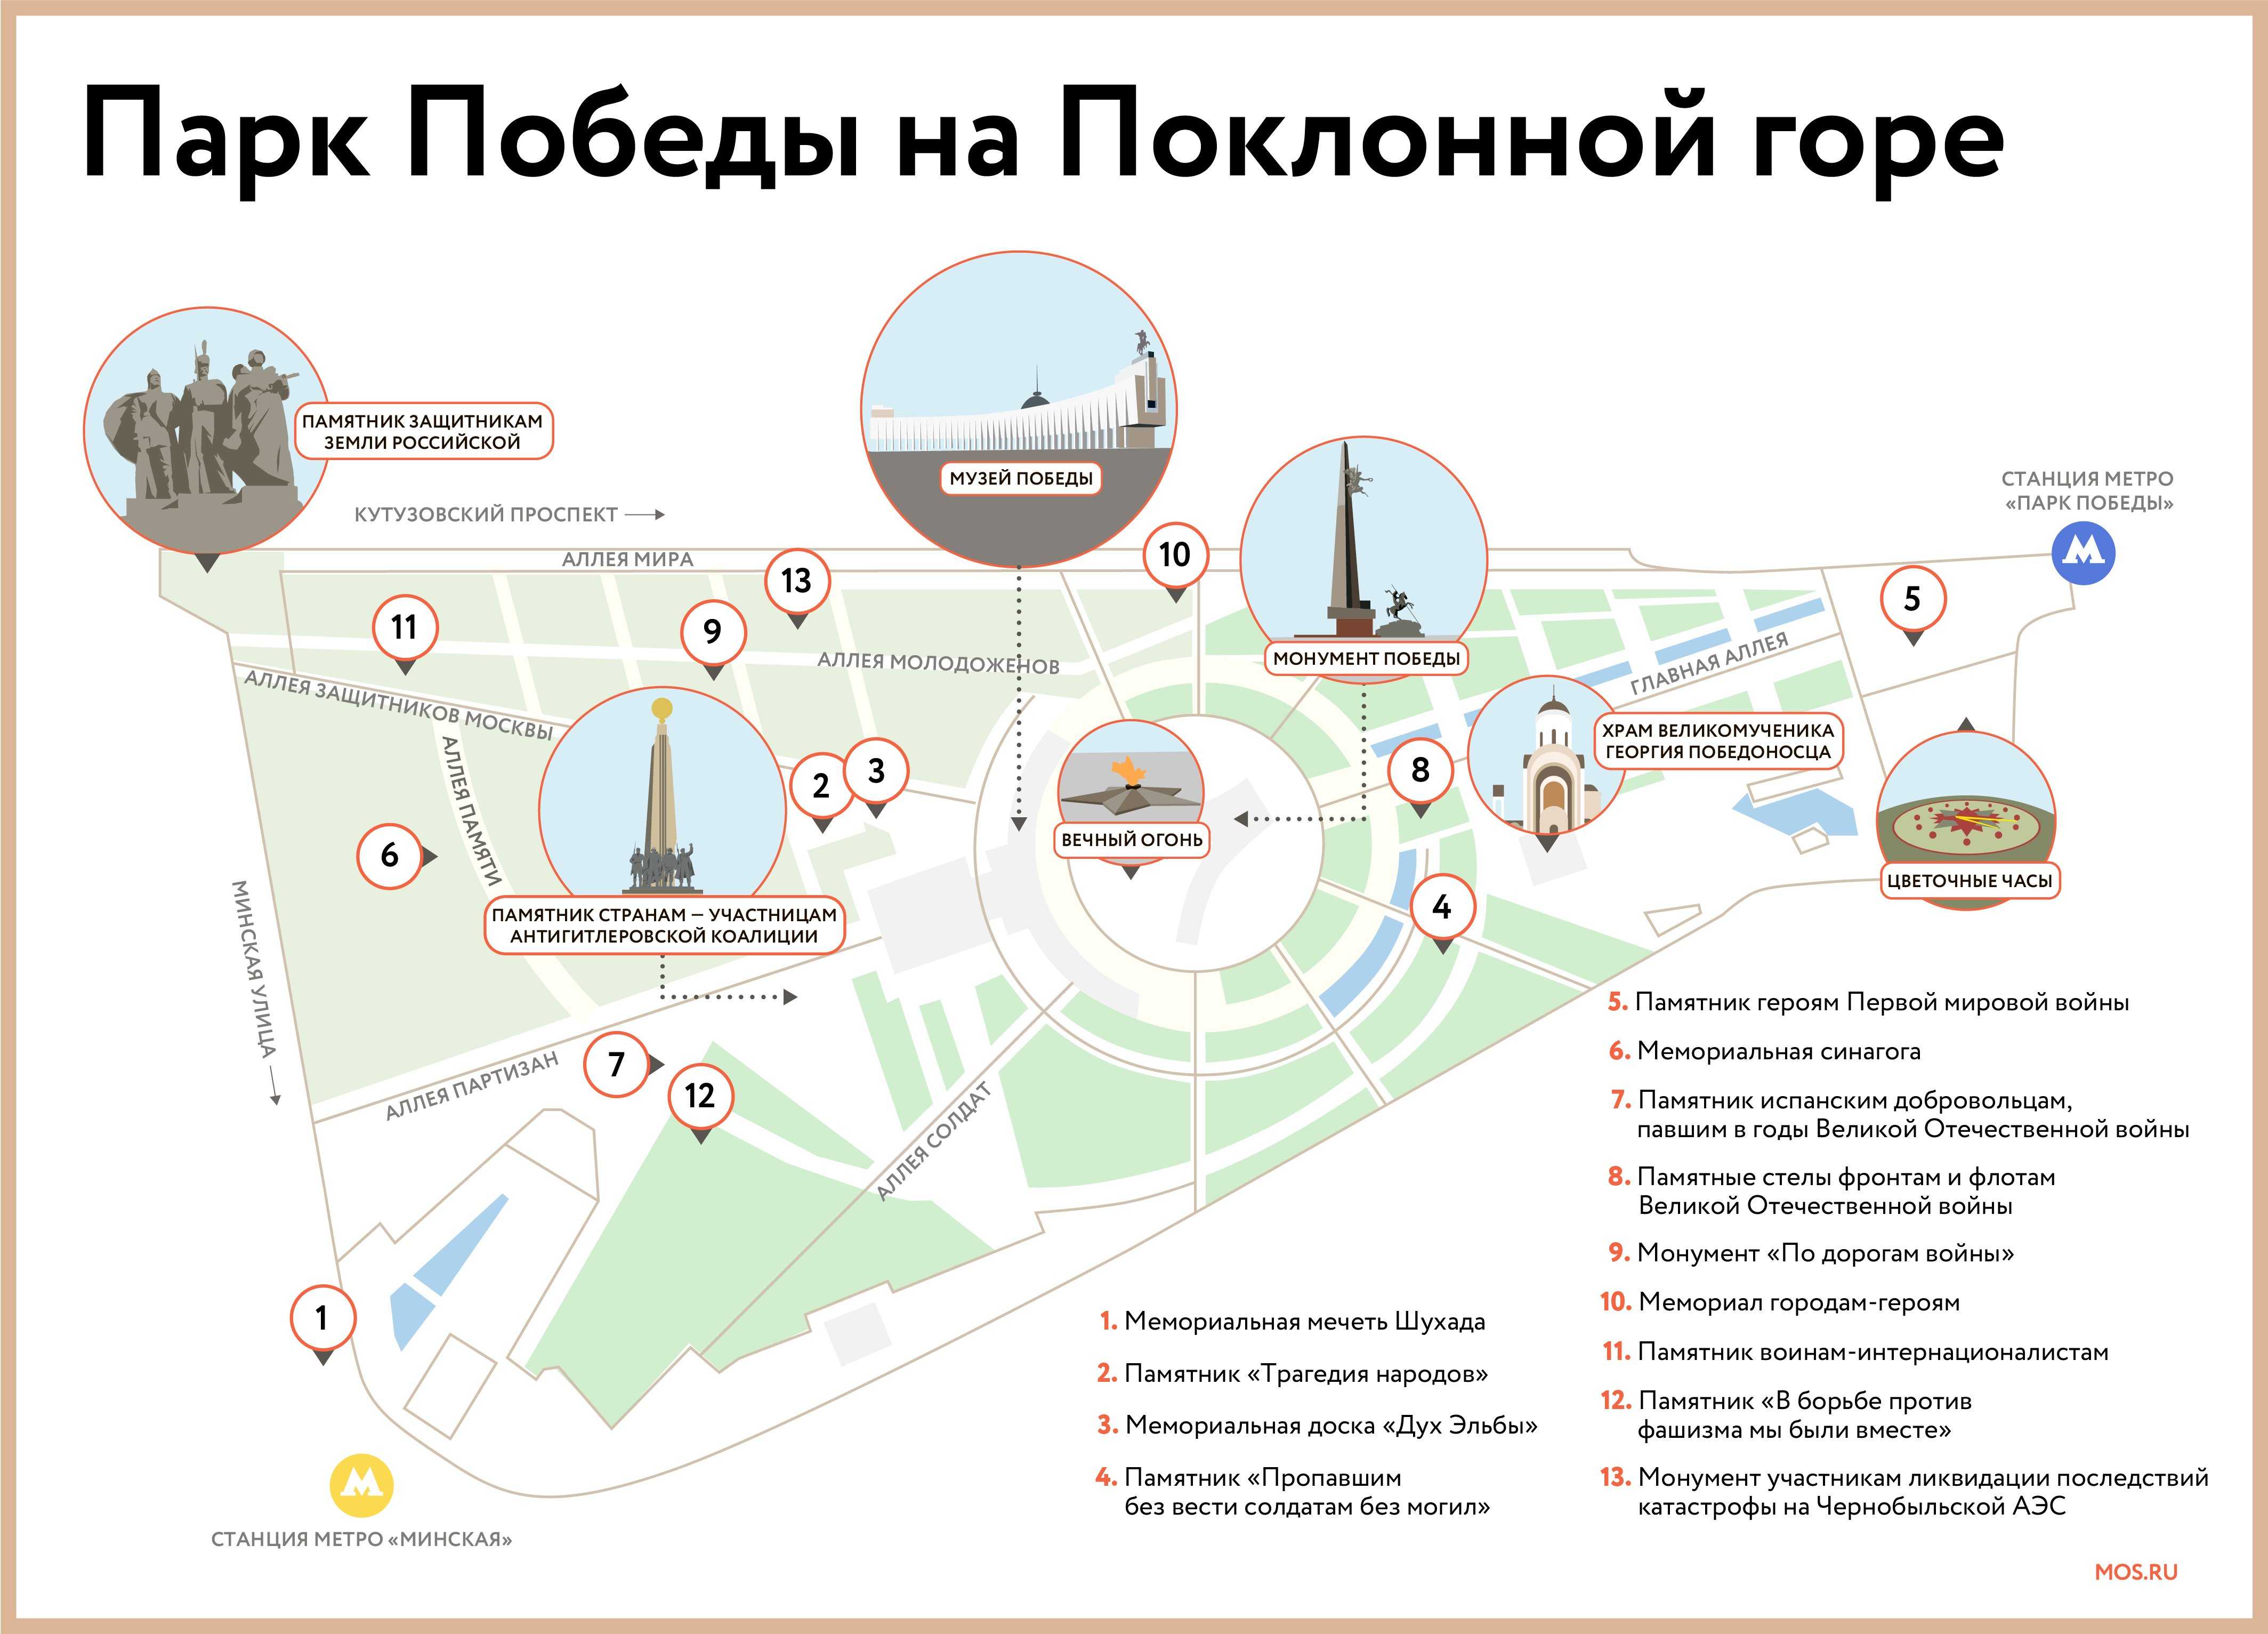 название парков в москве